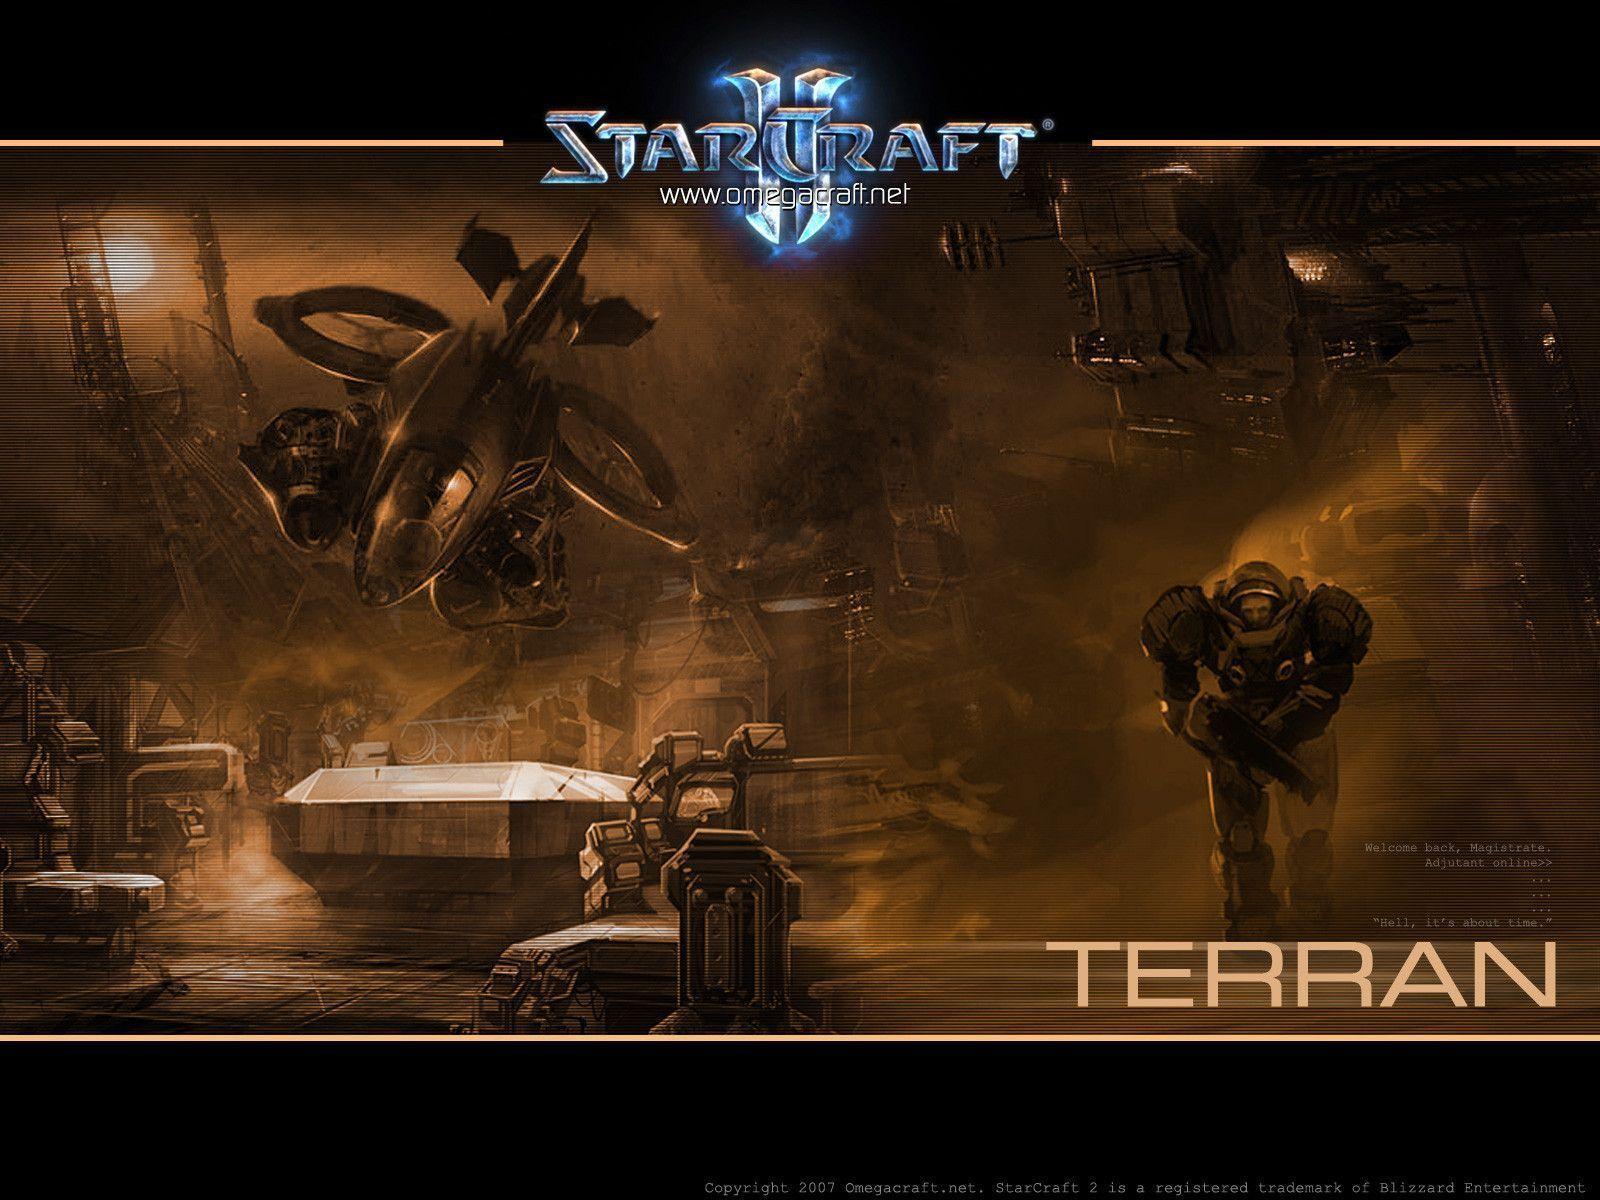 Starcraft 2 Terran Wallpaper background Wallpaper HD